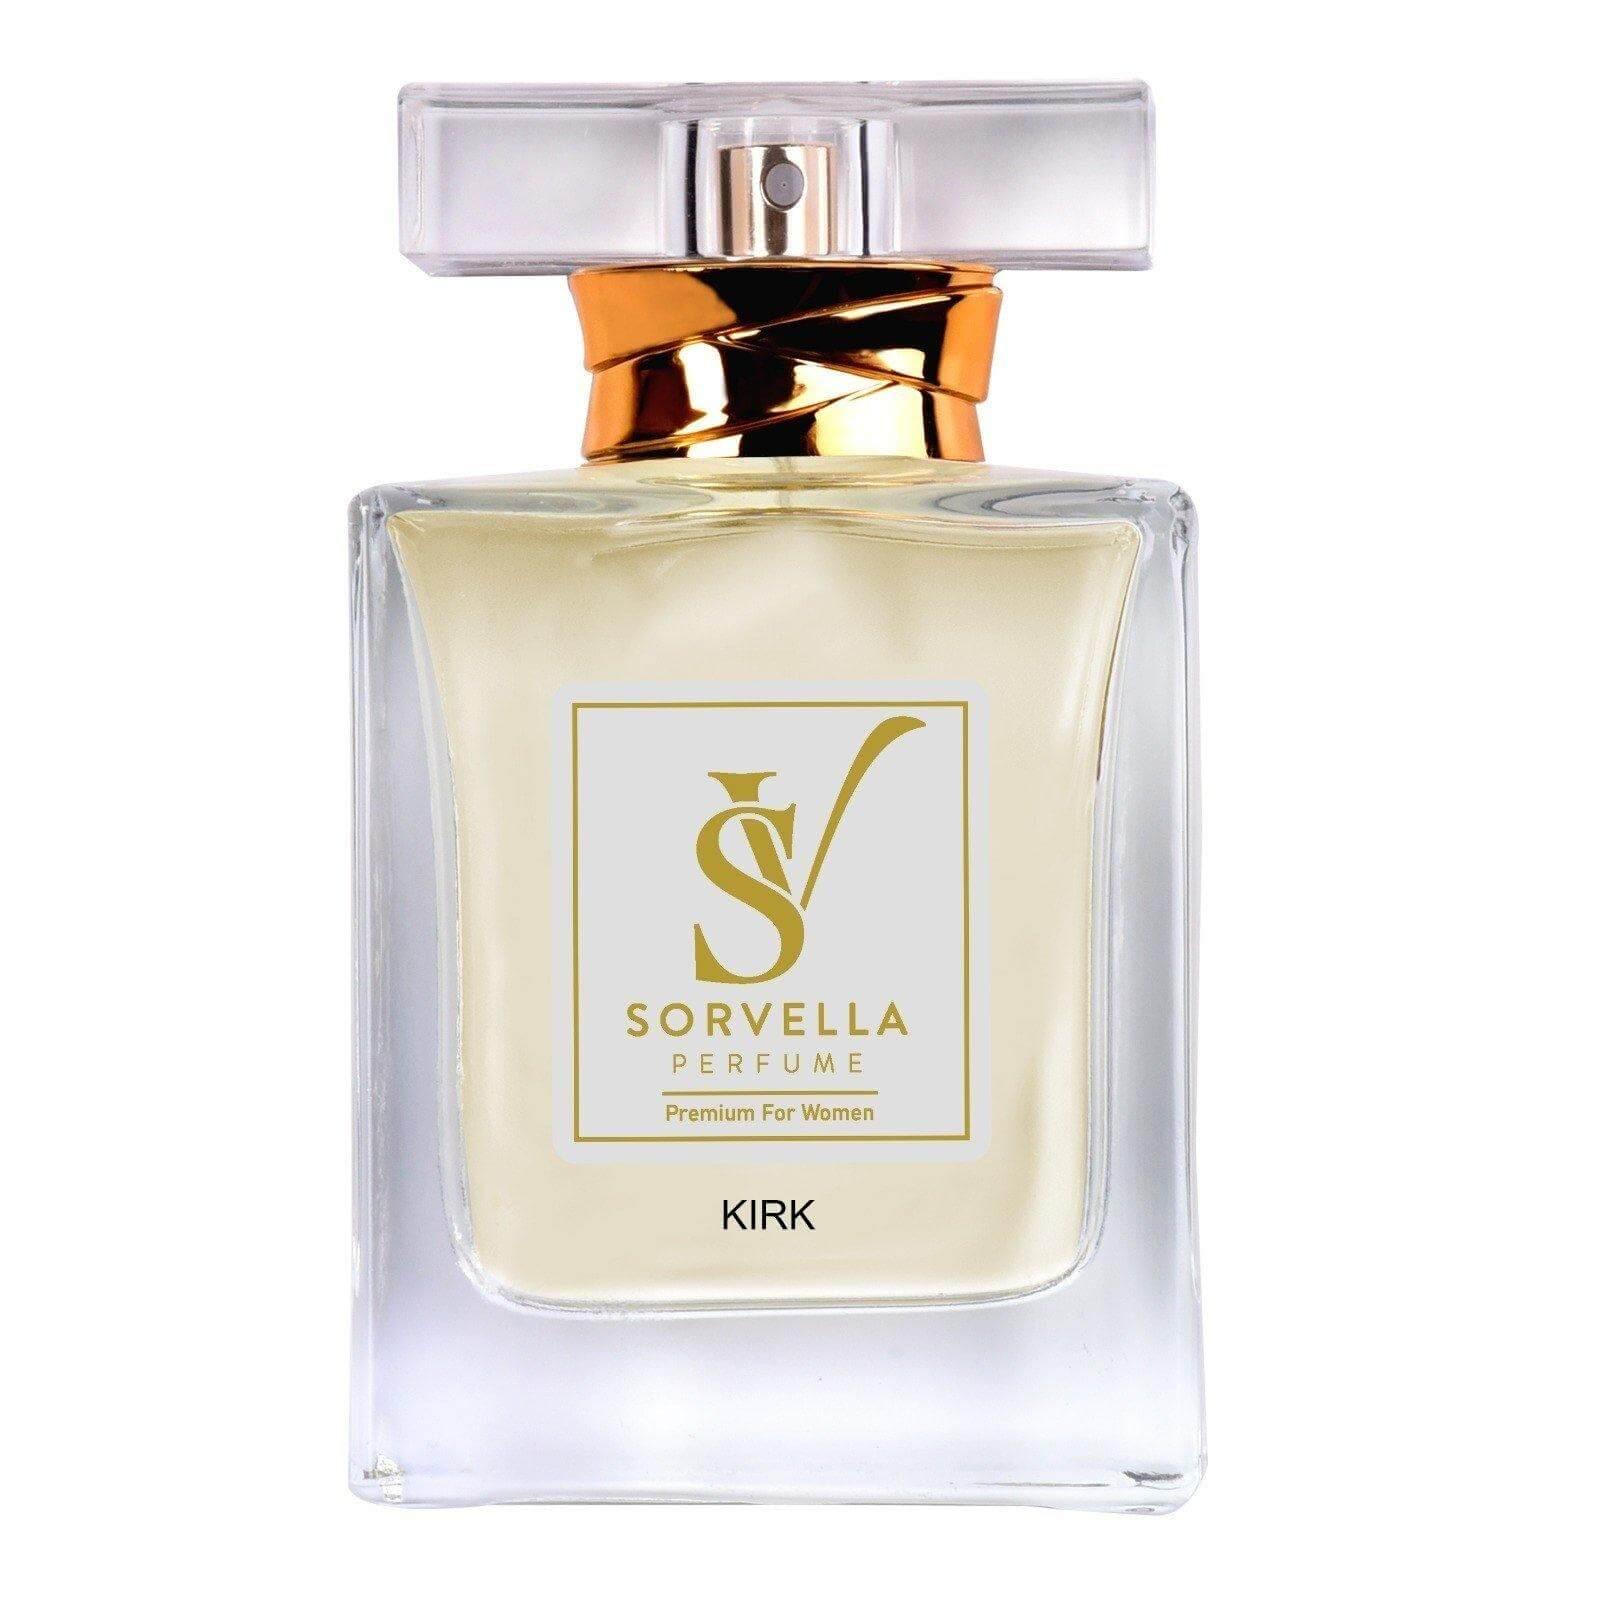 KIRKE OUTLET - Perfumy Unisex premium 50 ml - sorvellaperfume.pl